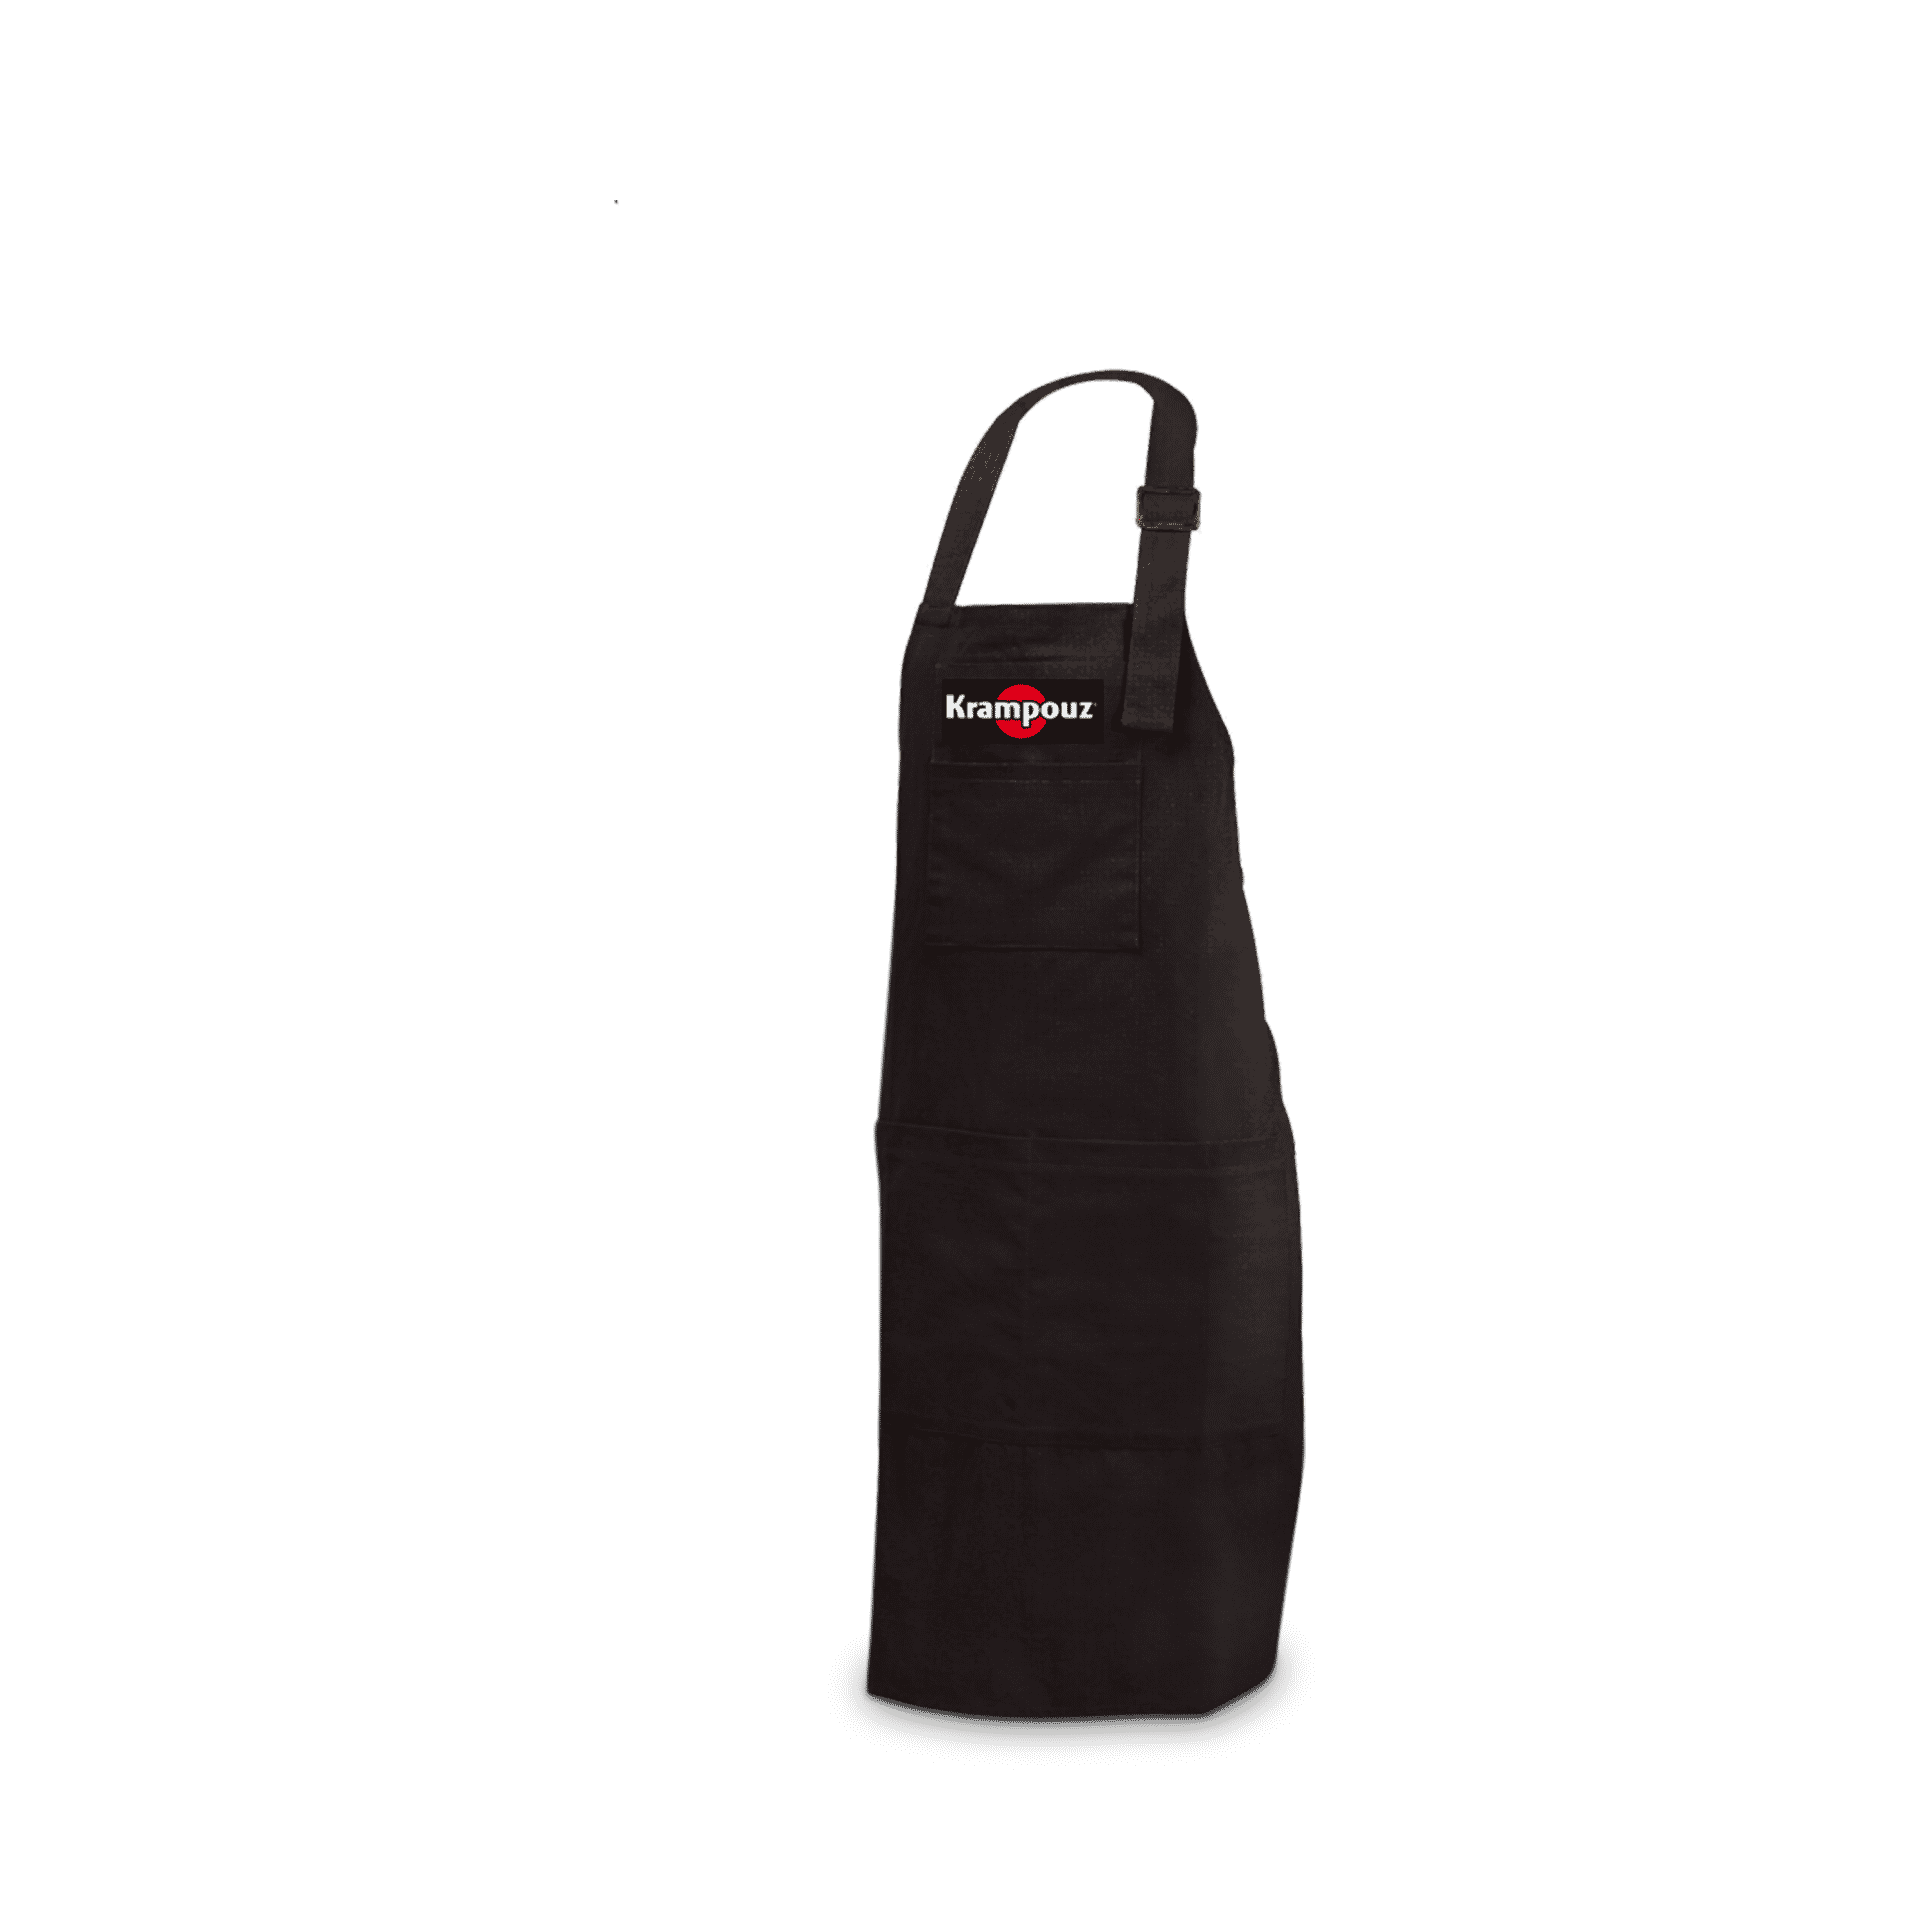 Krampouz - Tablier noir - ATC1 - KRAMPOUZ - Accessoires barbecue